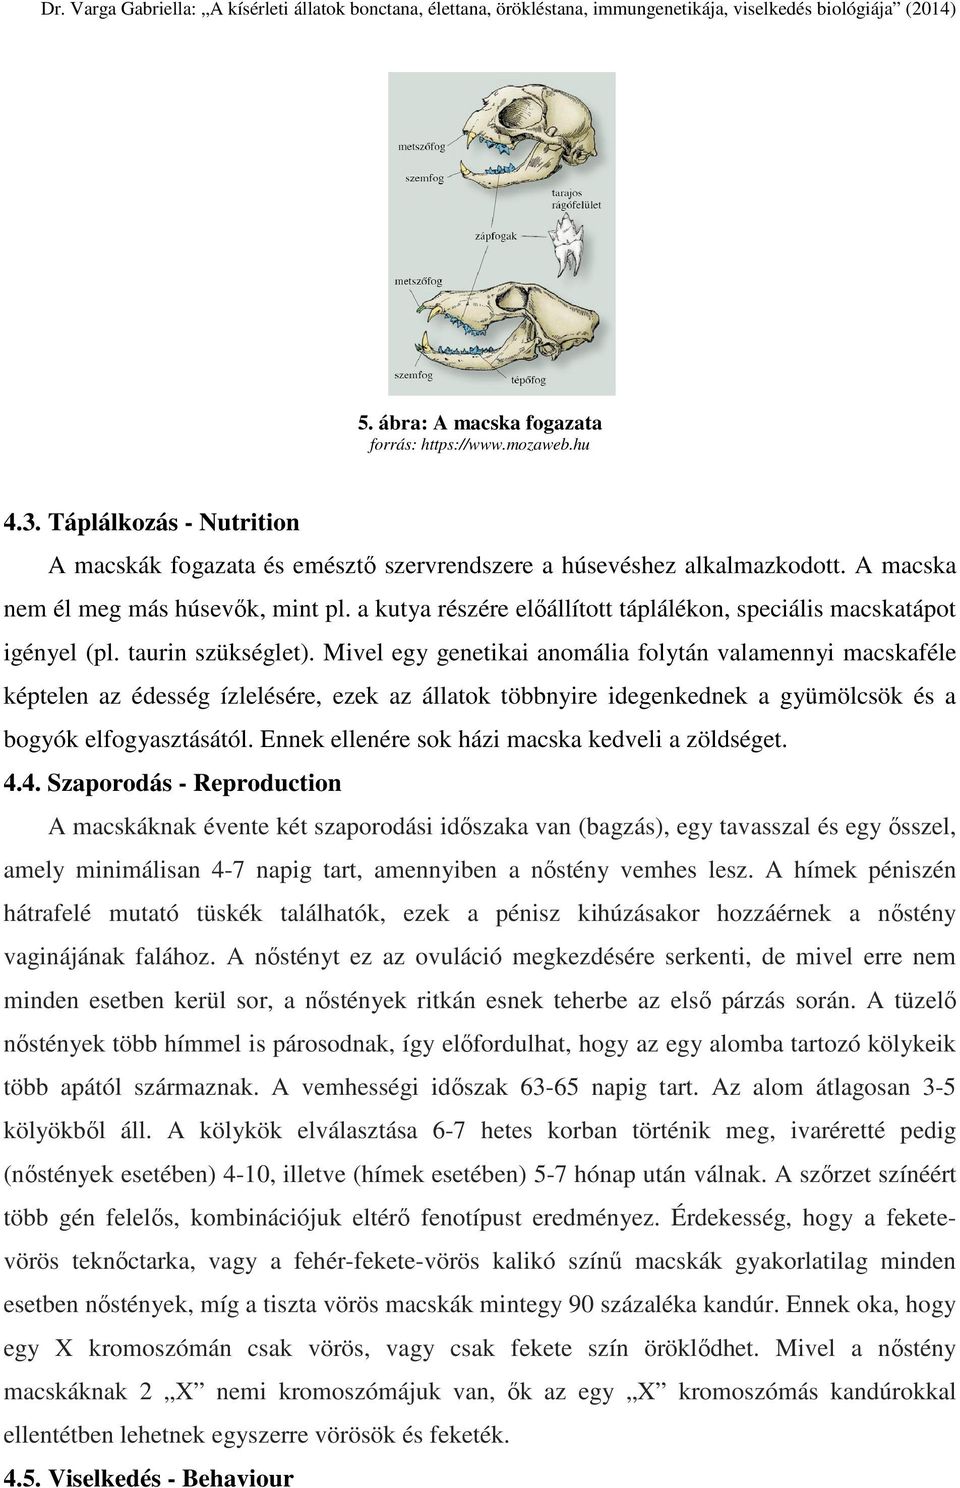 Dr. Varga Gabriella: A kísérleti állatok bonctana, élettana, örökléstana,  immungenetikája, viselkedés biológiája (2014) - PDF Free Download